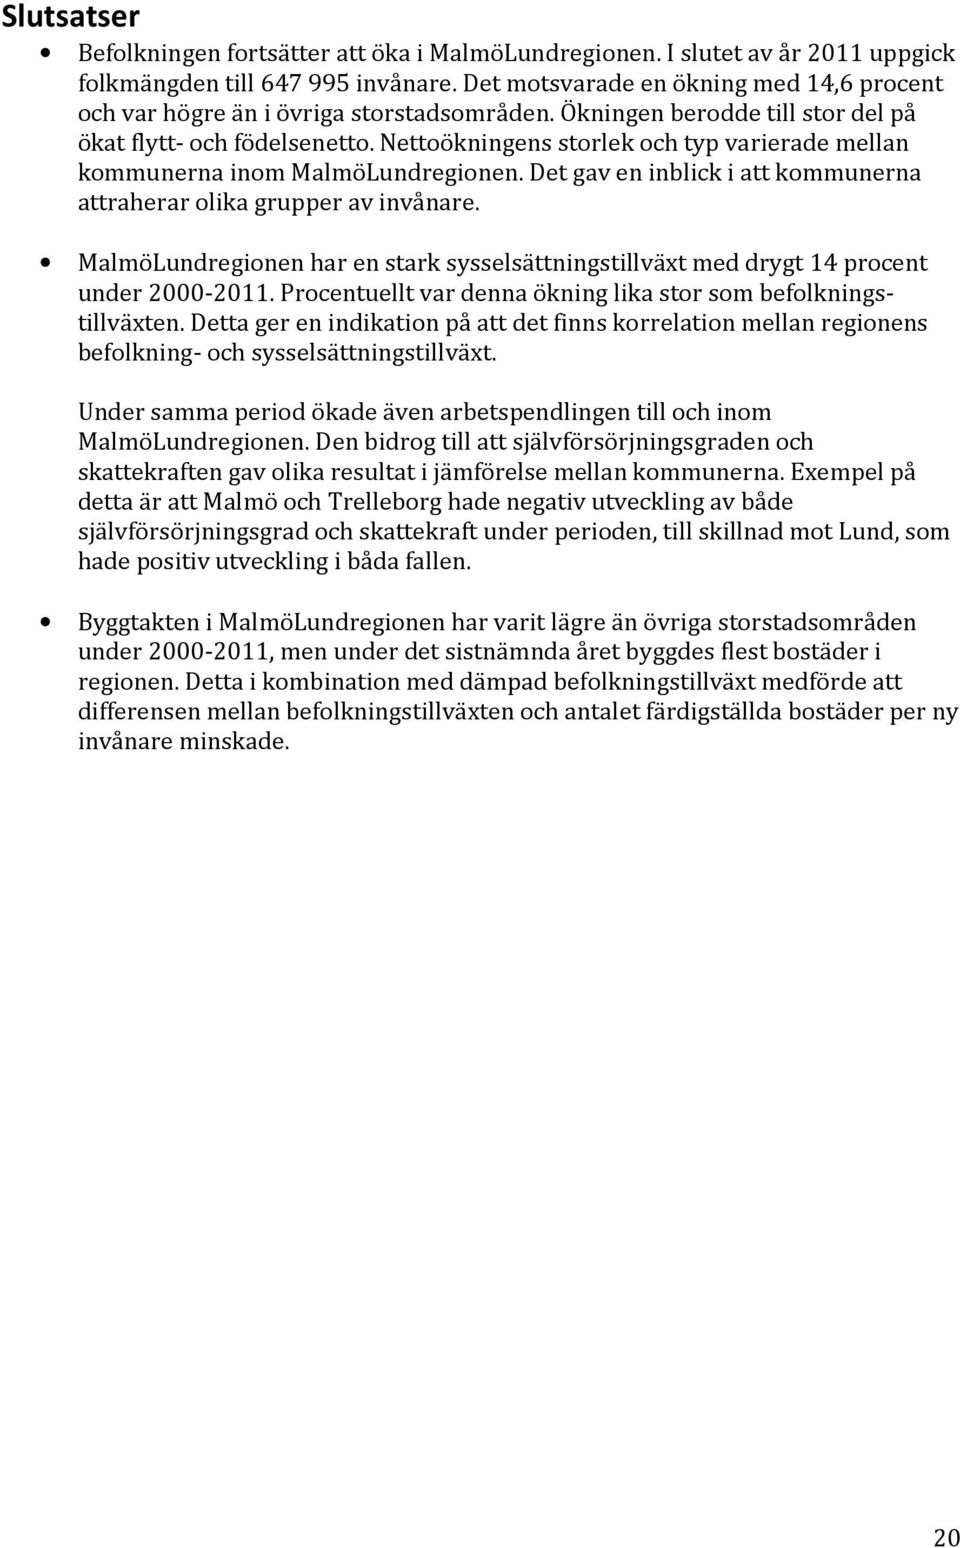 Nettoökningens storlek och typ varierade mellan kommunerna inom MalmöLundregionen. Det gav en inblick i att kommunerna attraherar olika grupper av invånare.